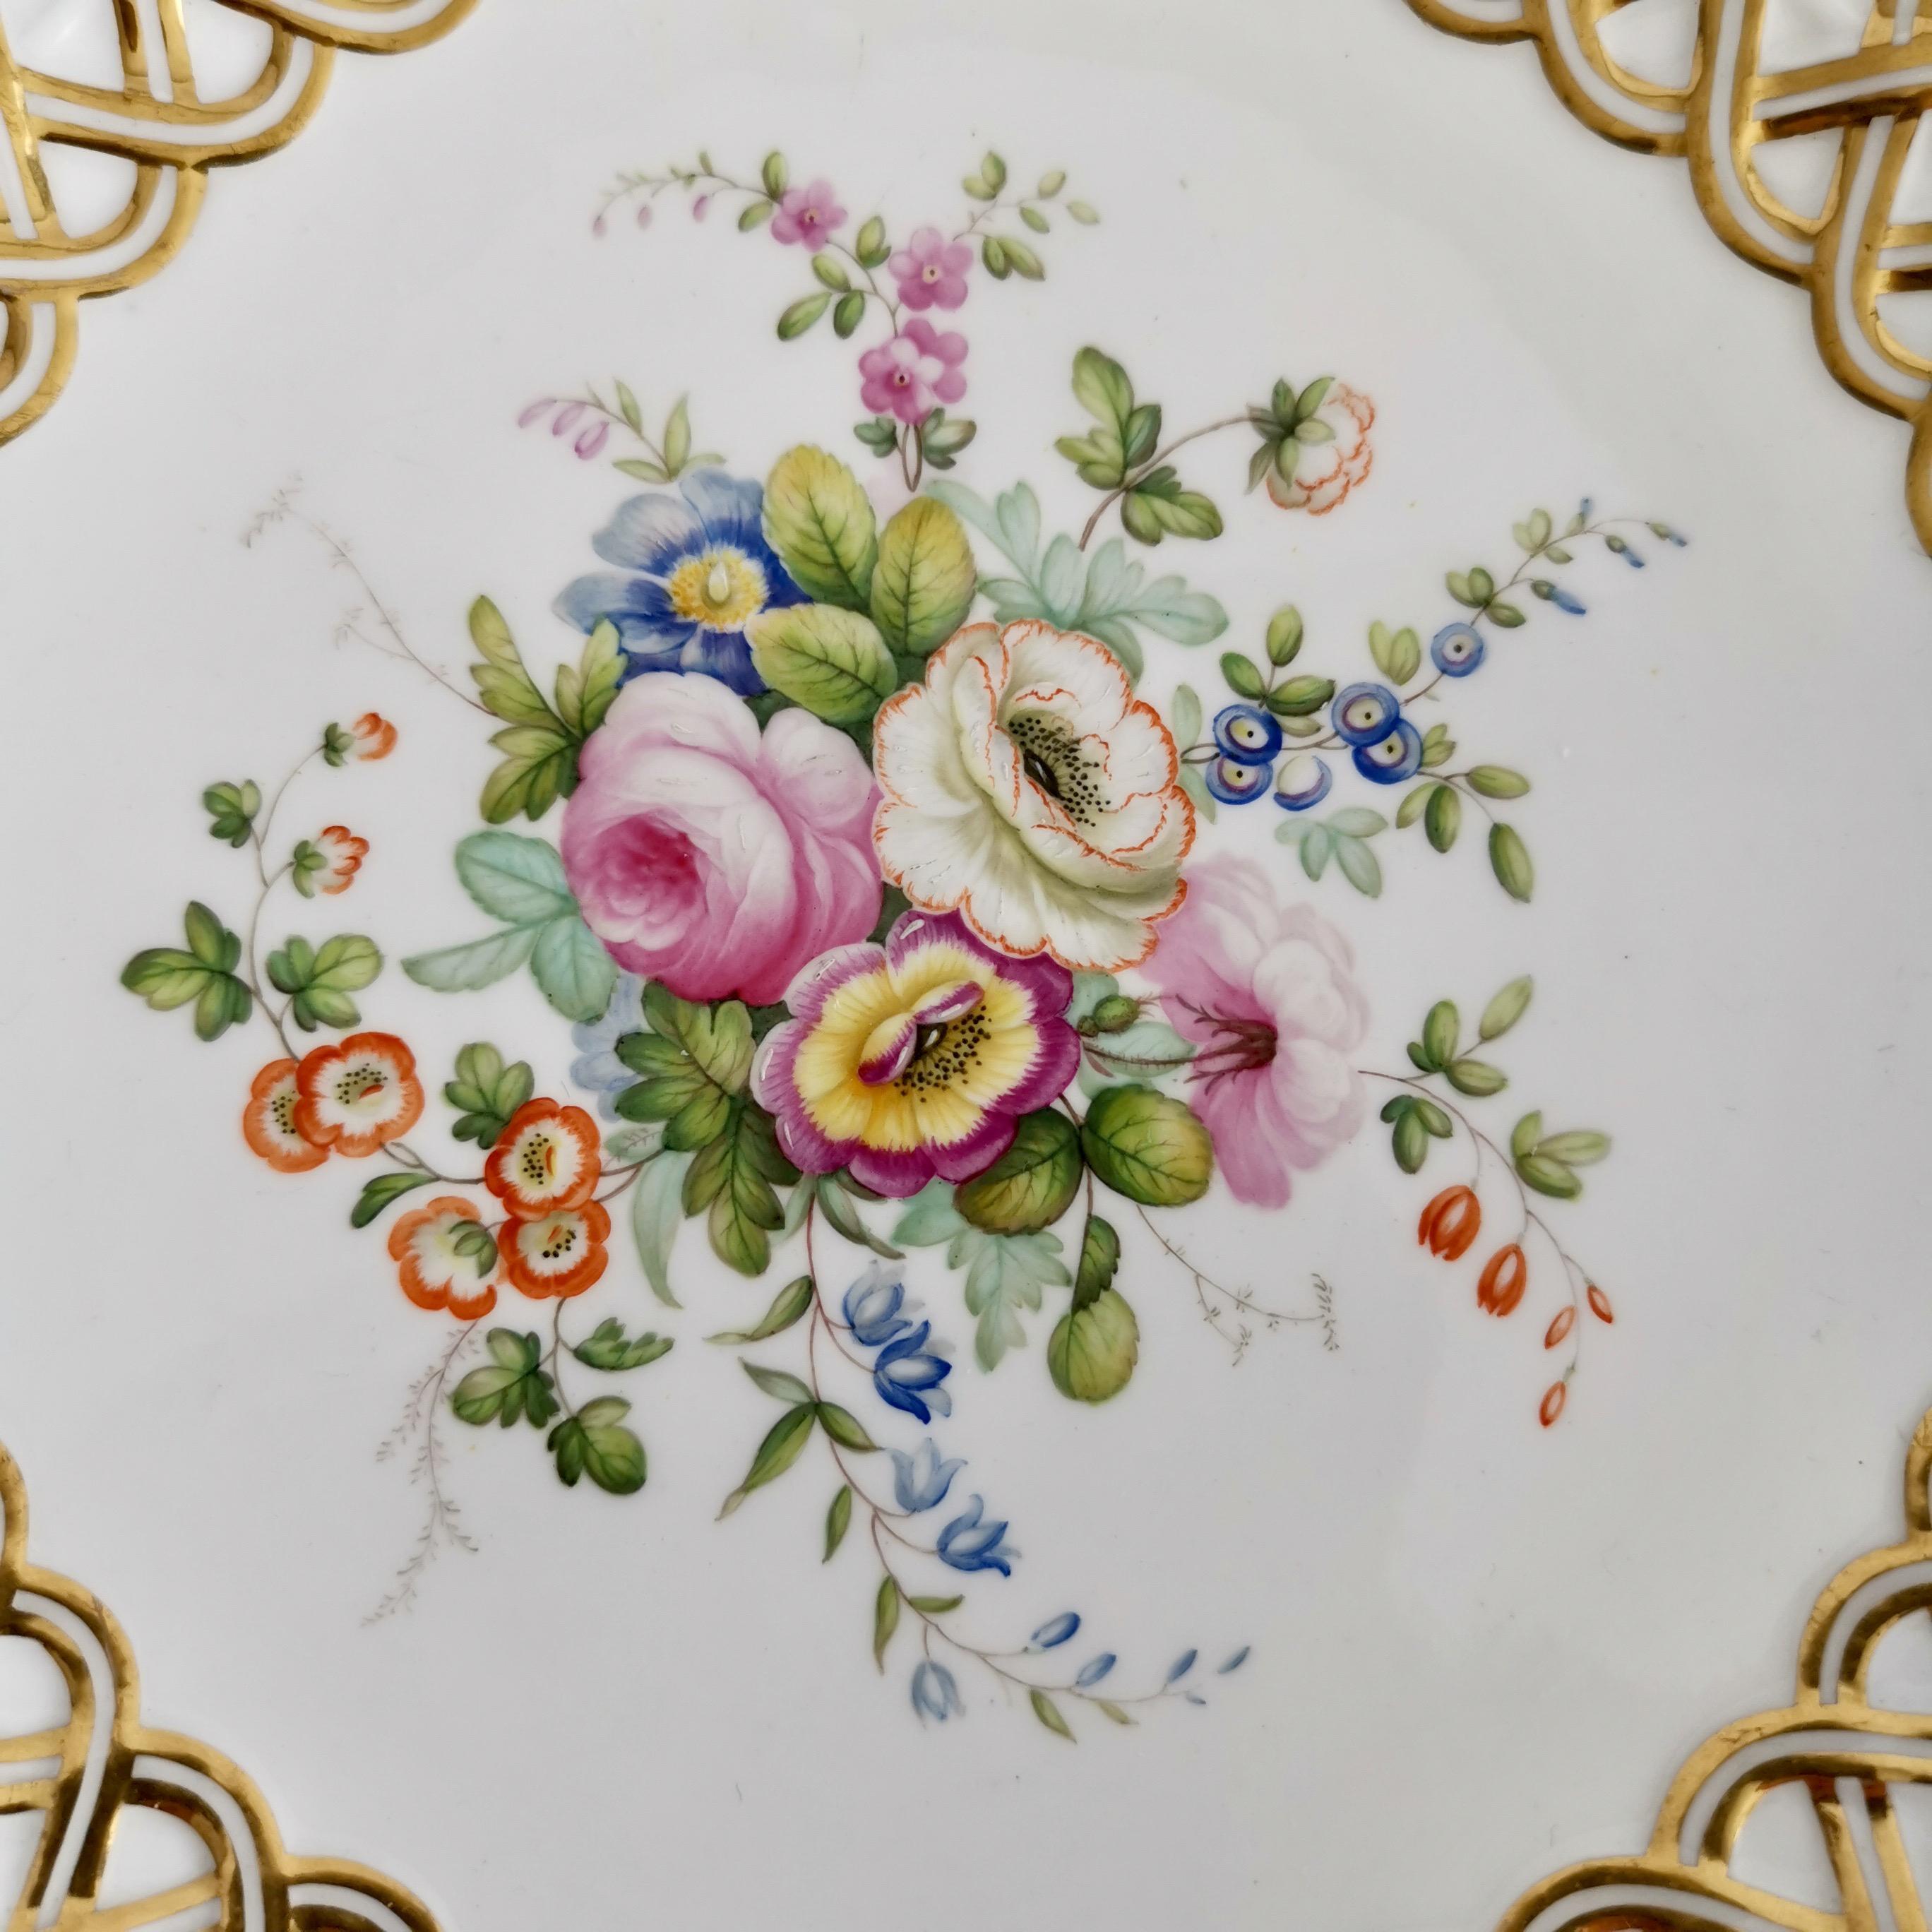 Mid-19th Century Minton Porcelain Dessert Service, White, Flowers J. Bancroft, Victorian, 1841